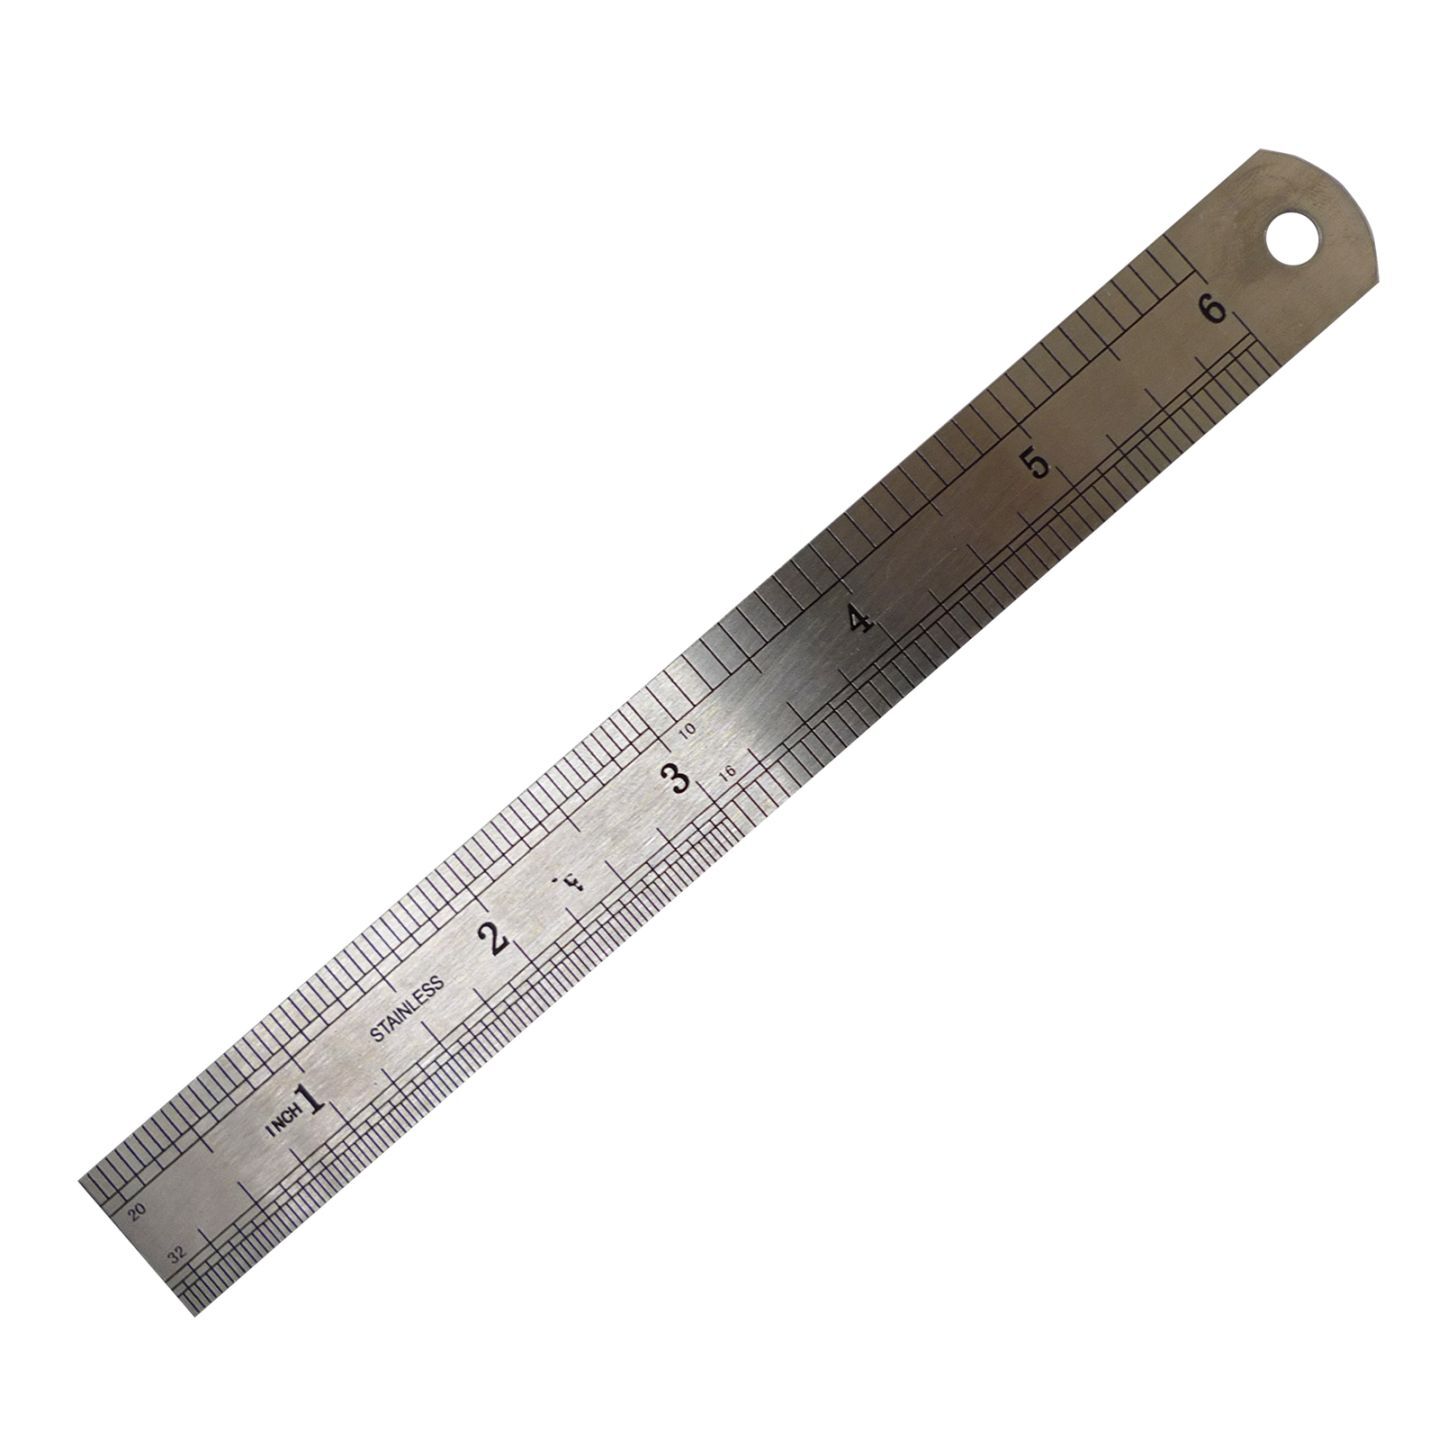 Timberbits Metal Ruler